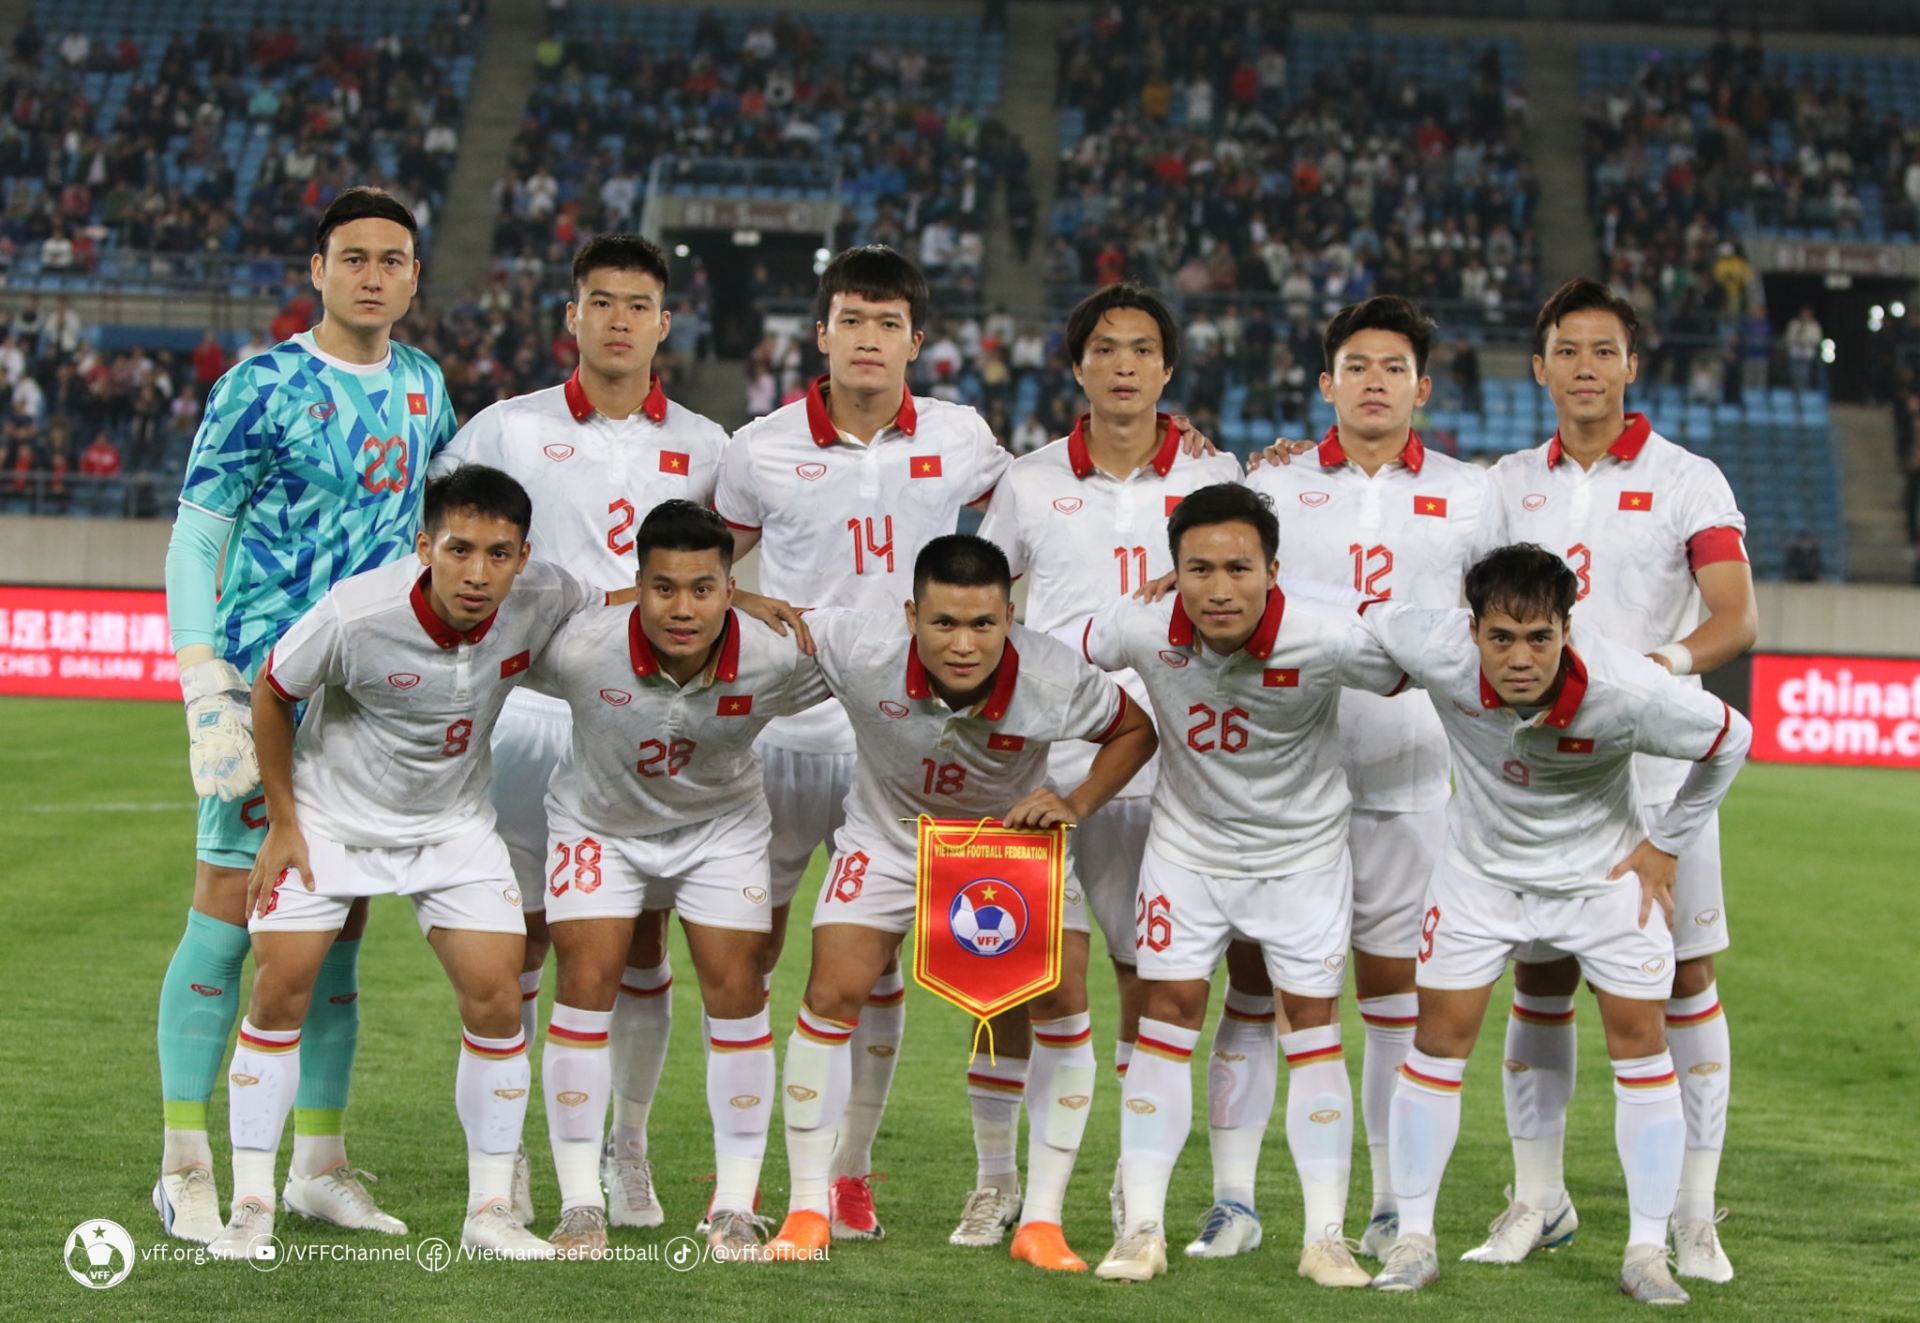 Thua ĐT Trung Quốc, ĐT Việt Nam nhận thêm “tin dữ” từ FIFA - Ảnh 2.